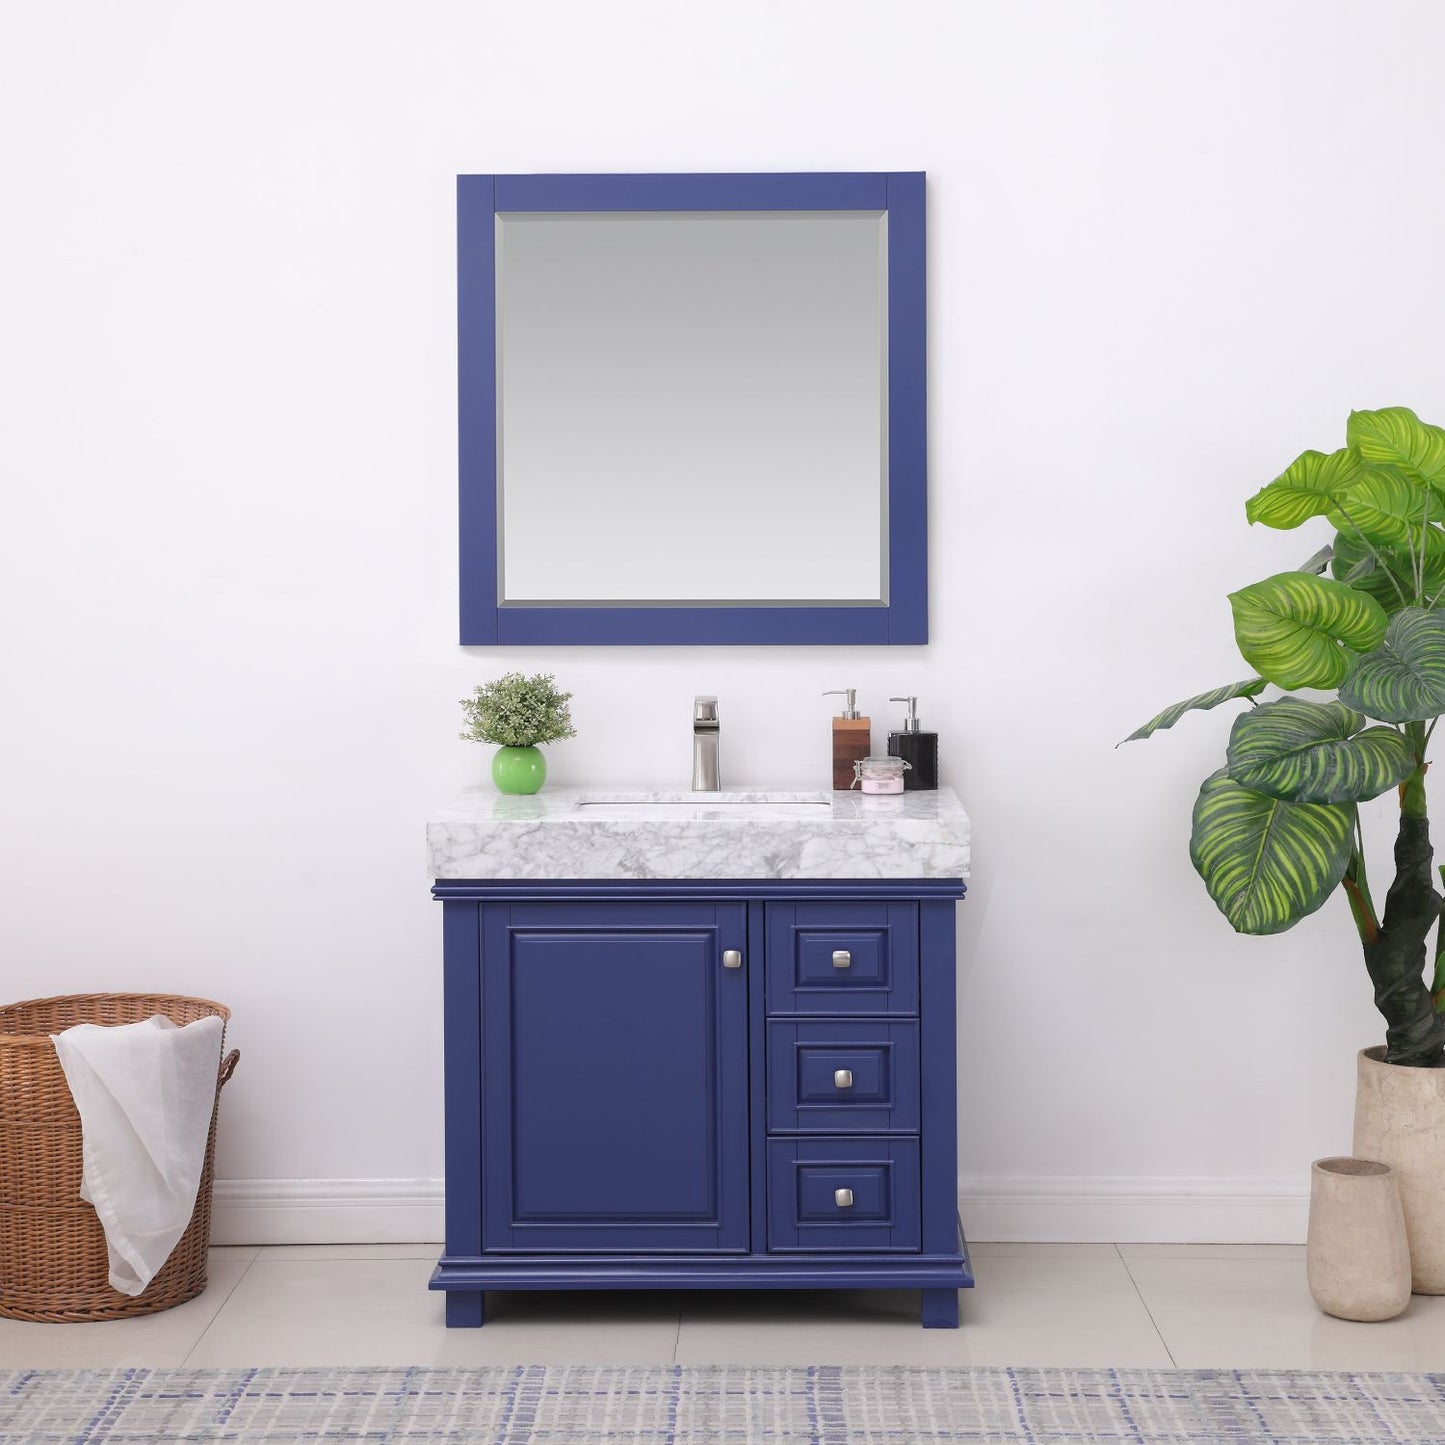 Altair Jardin 36" Single Bathroom Vanity Set Countertop with Mirror - Luxe Bathroom Vanities